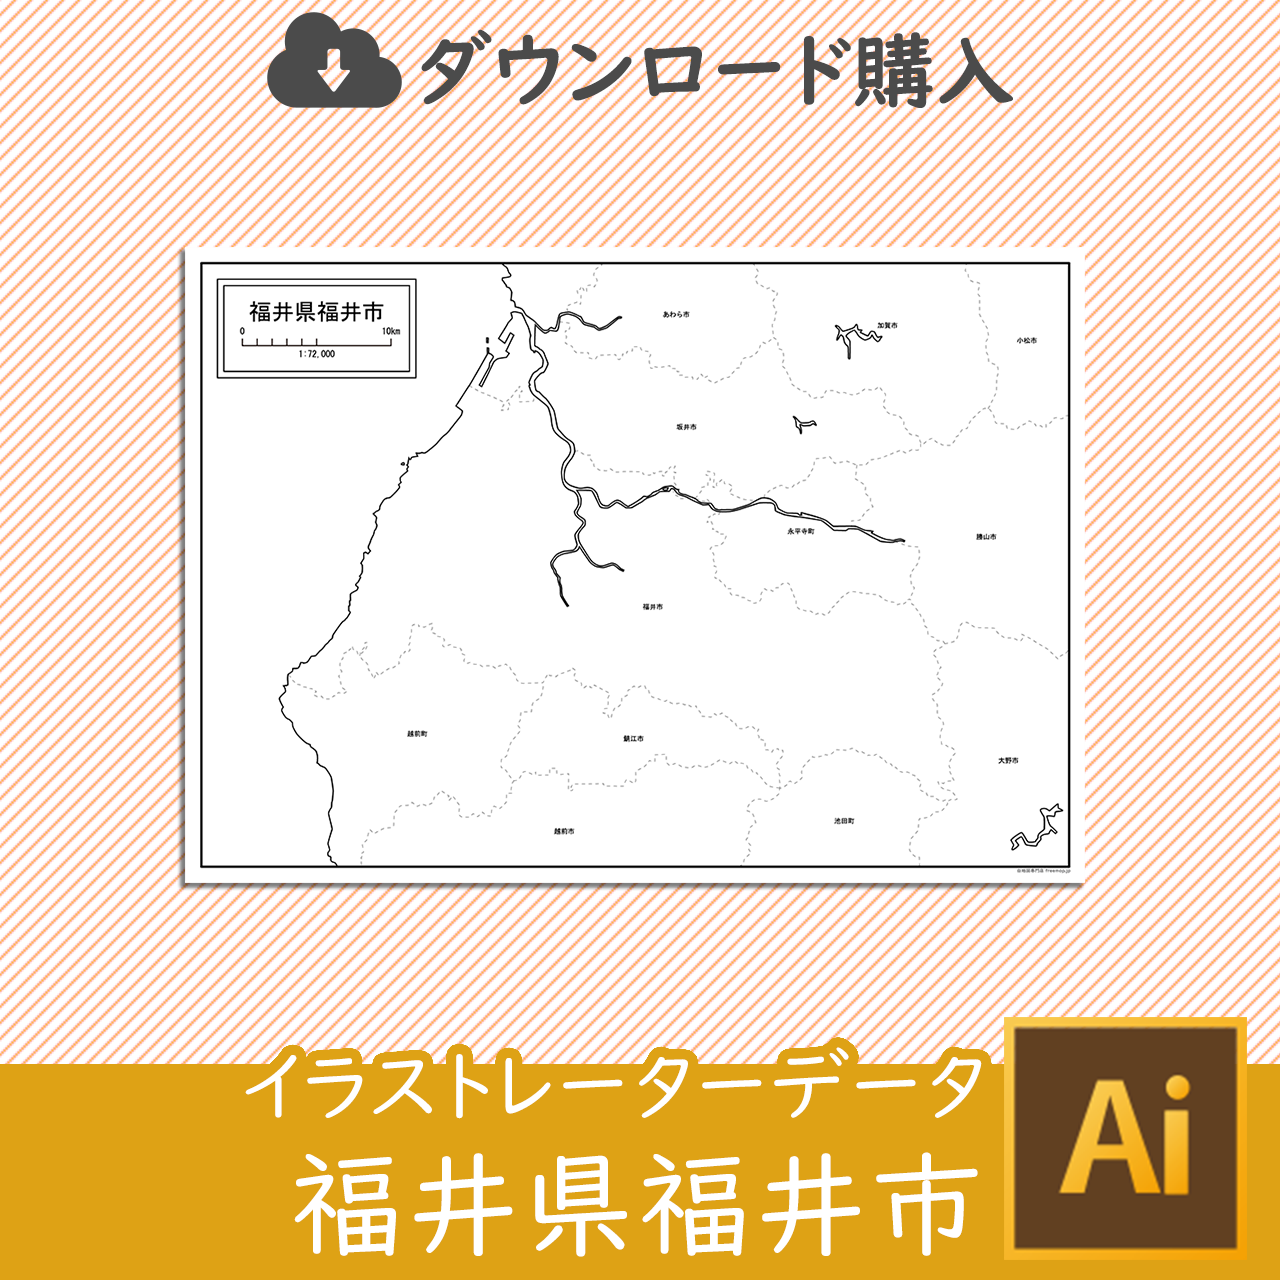 福井市のaiデータのサムネイル画像